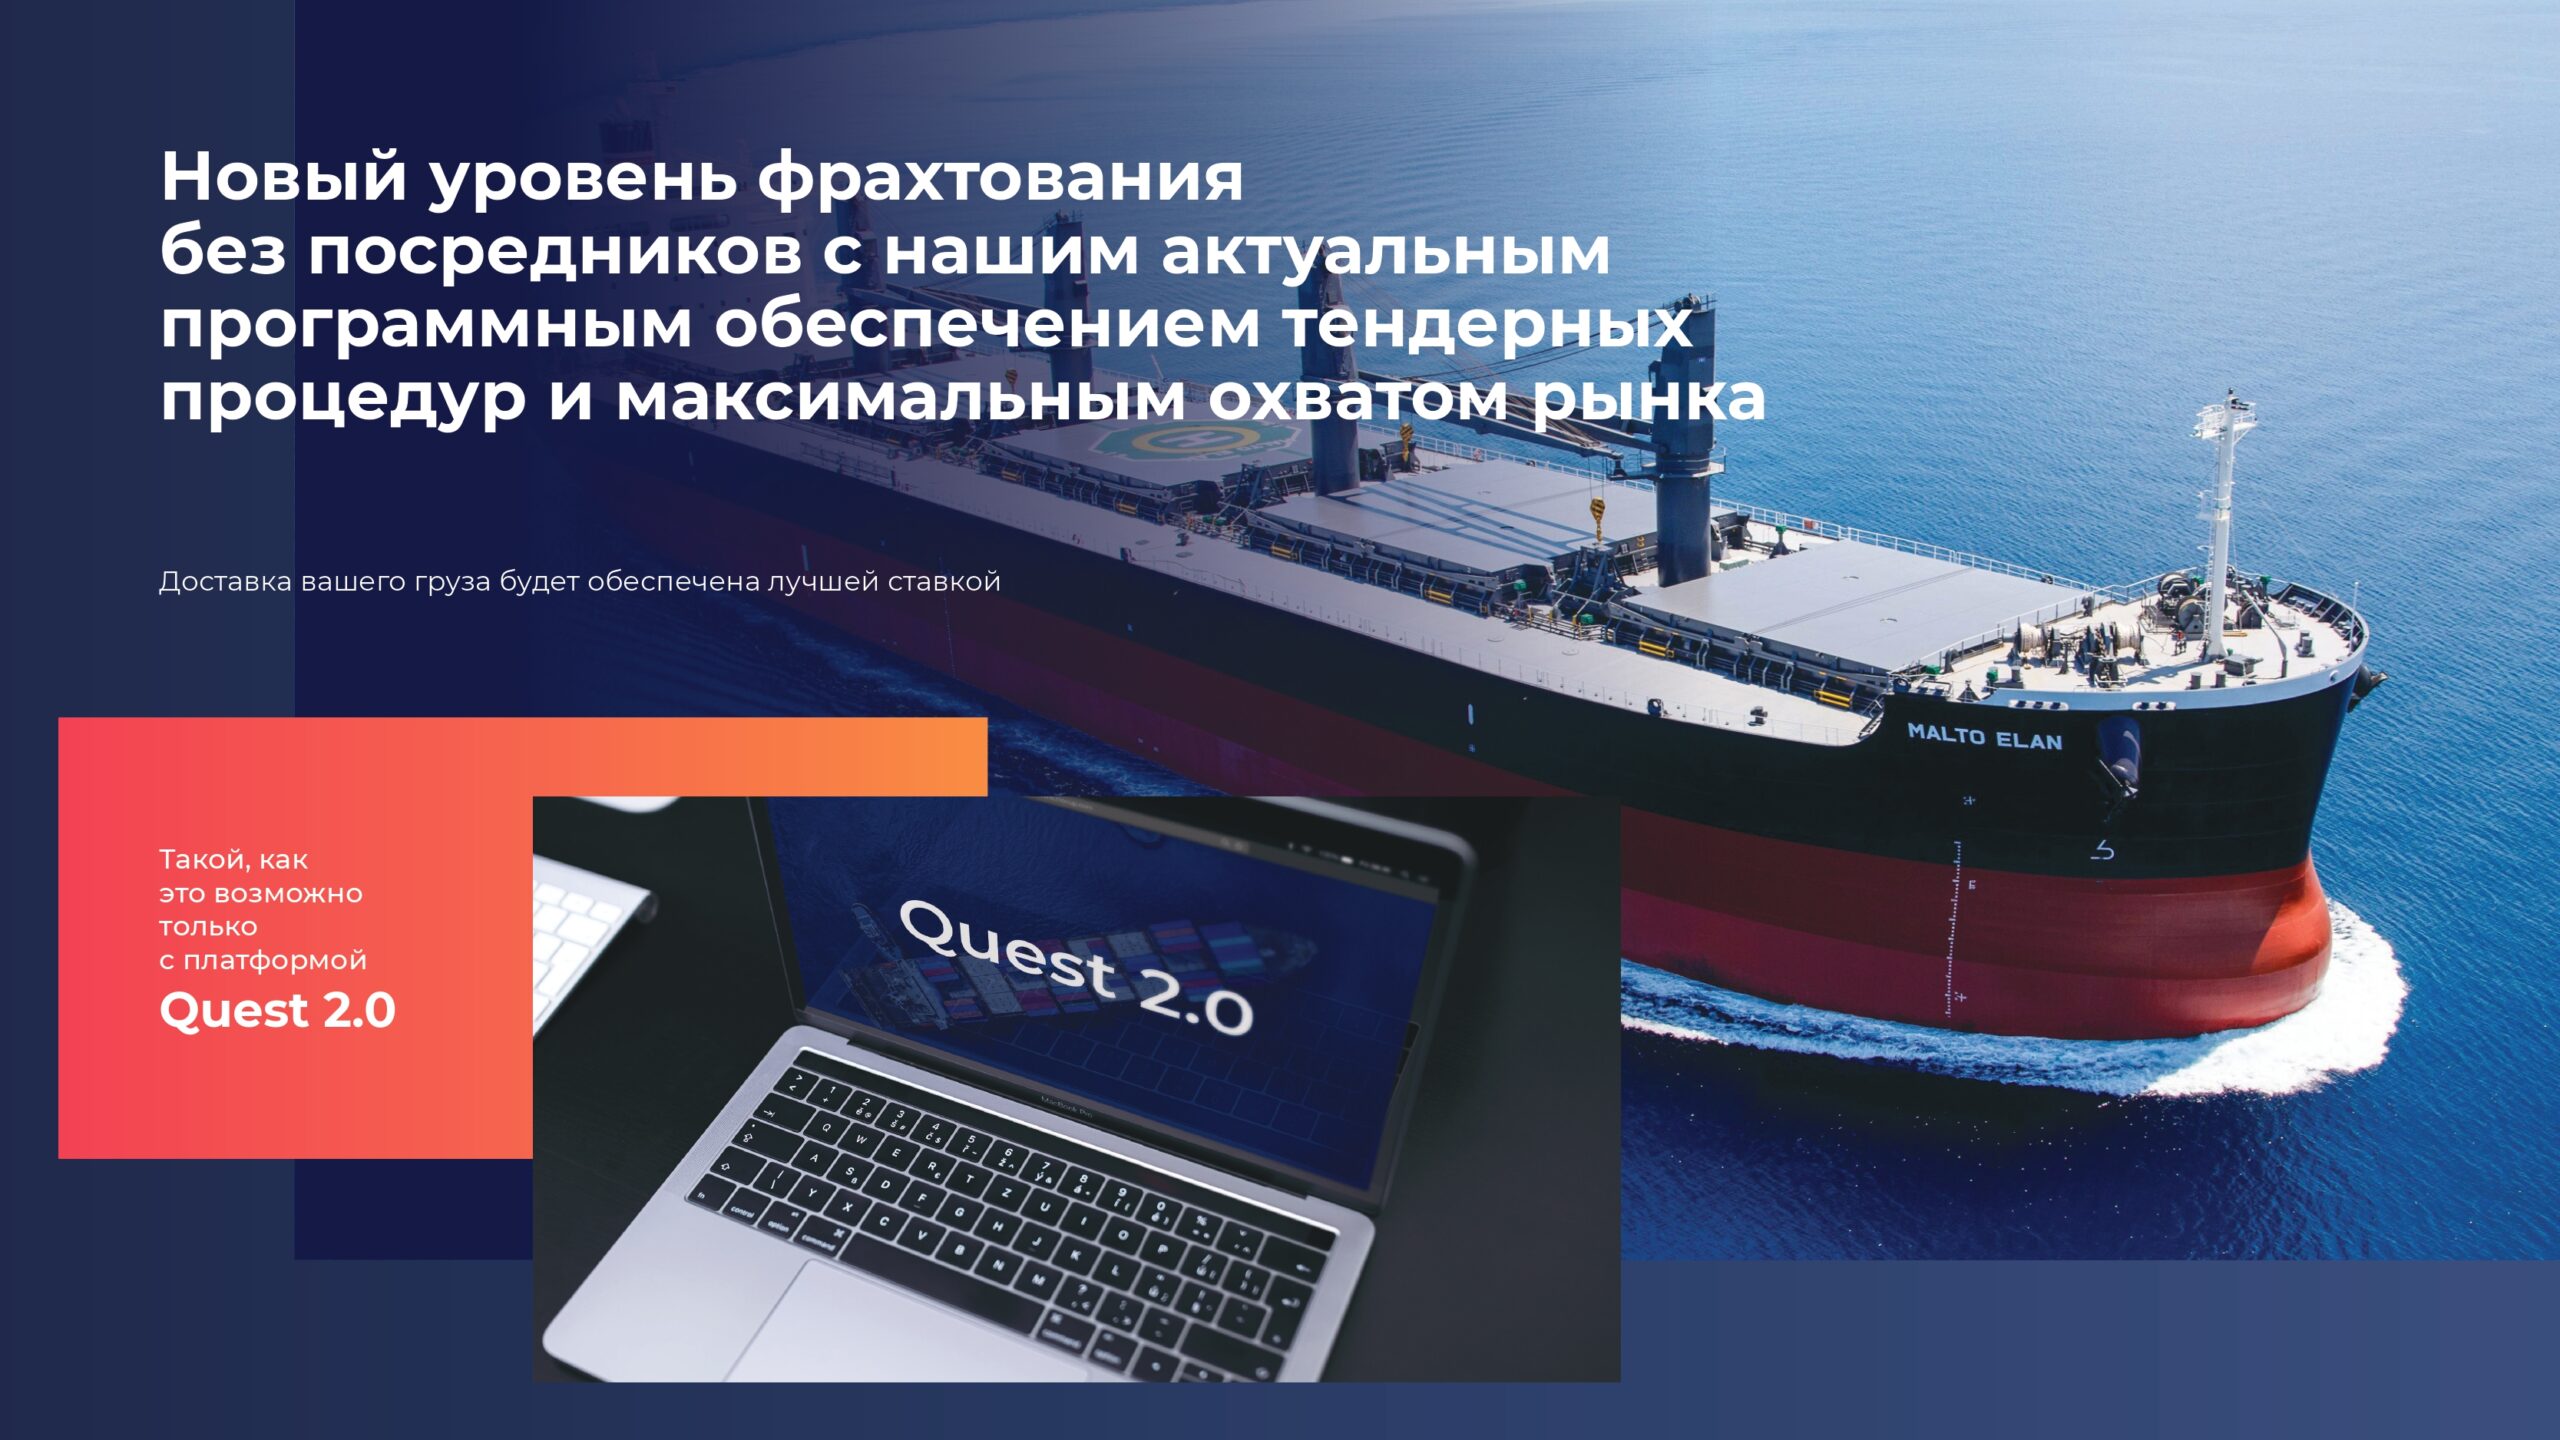 Презентация IT платформы для логистической компании морских перевозок слайд 2